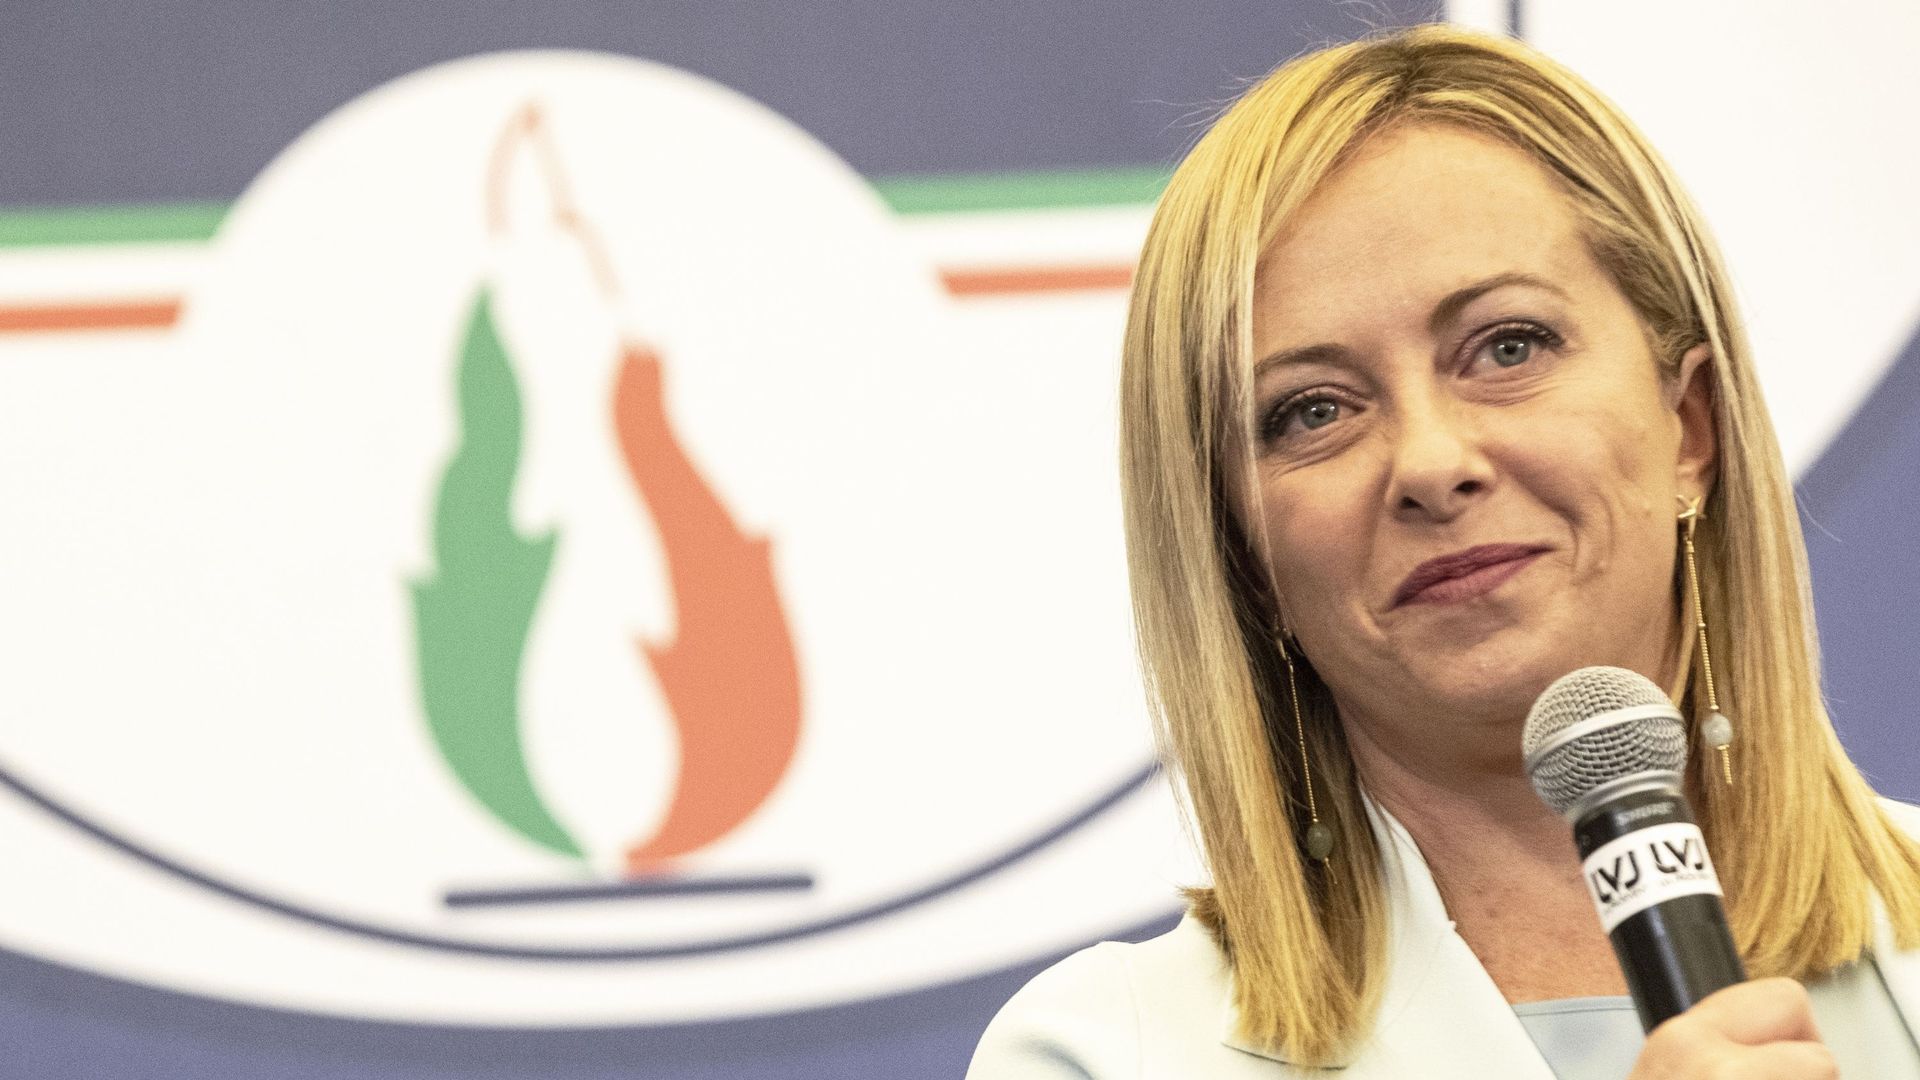 La dirigeante de Fratelli d'Italia Giorgia Meloni, s'adresse à ses partisans après sa victoire aux élections générales italiennes, le 26 septembre 2022 à Rome, en Italie.